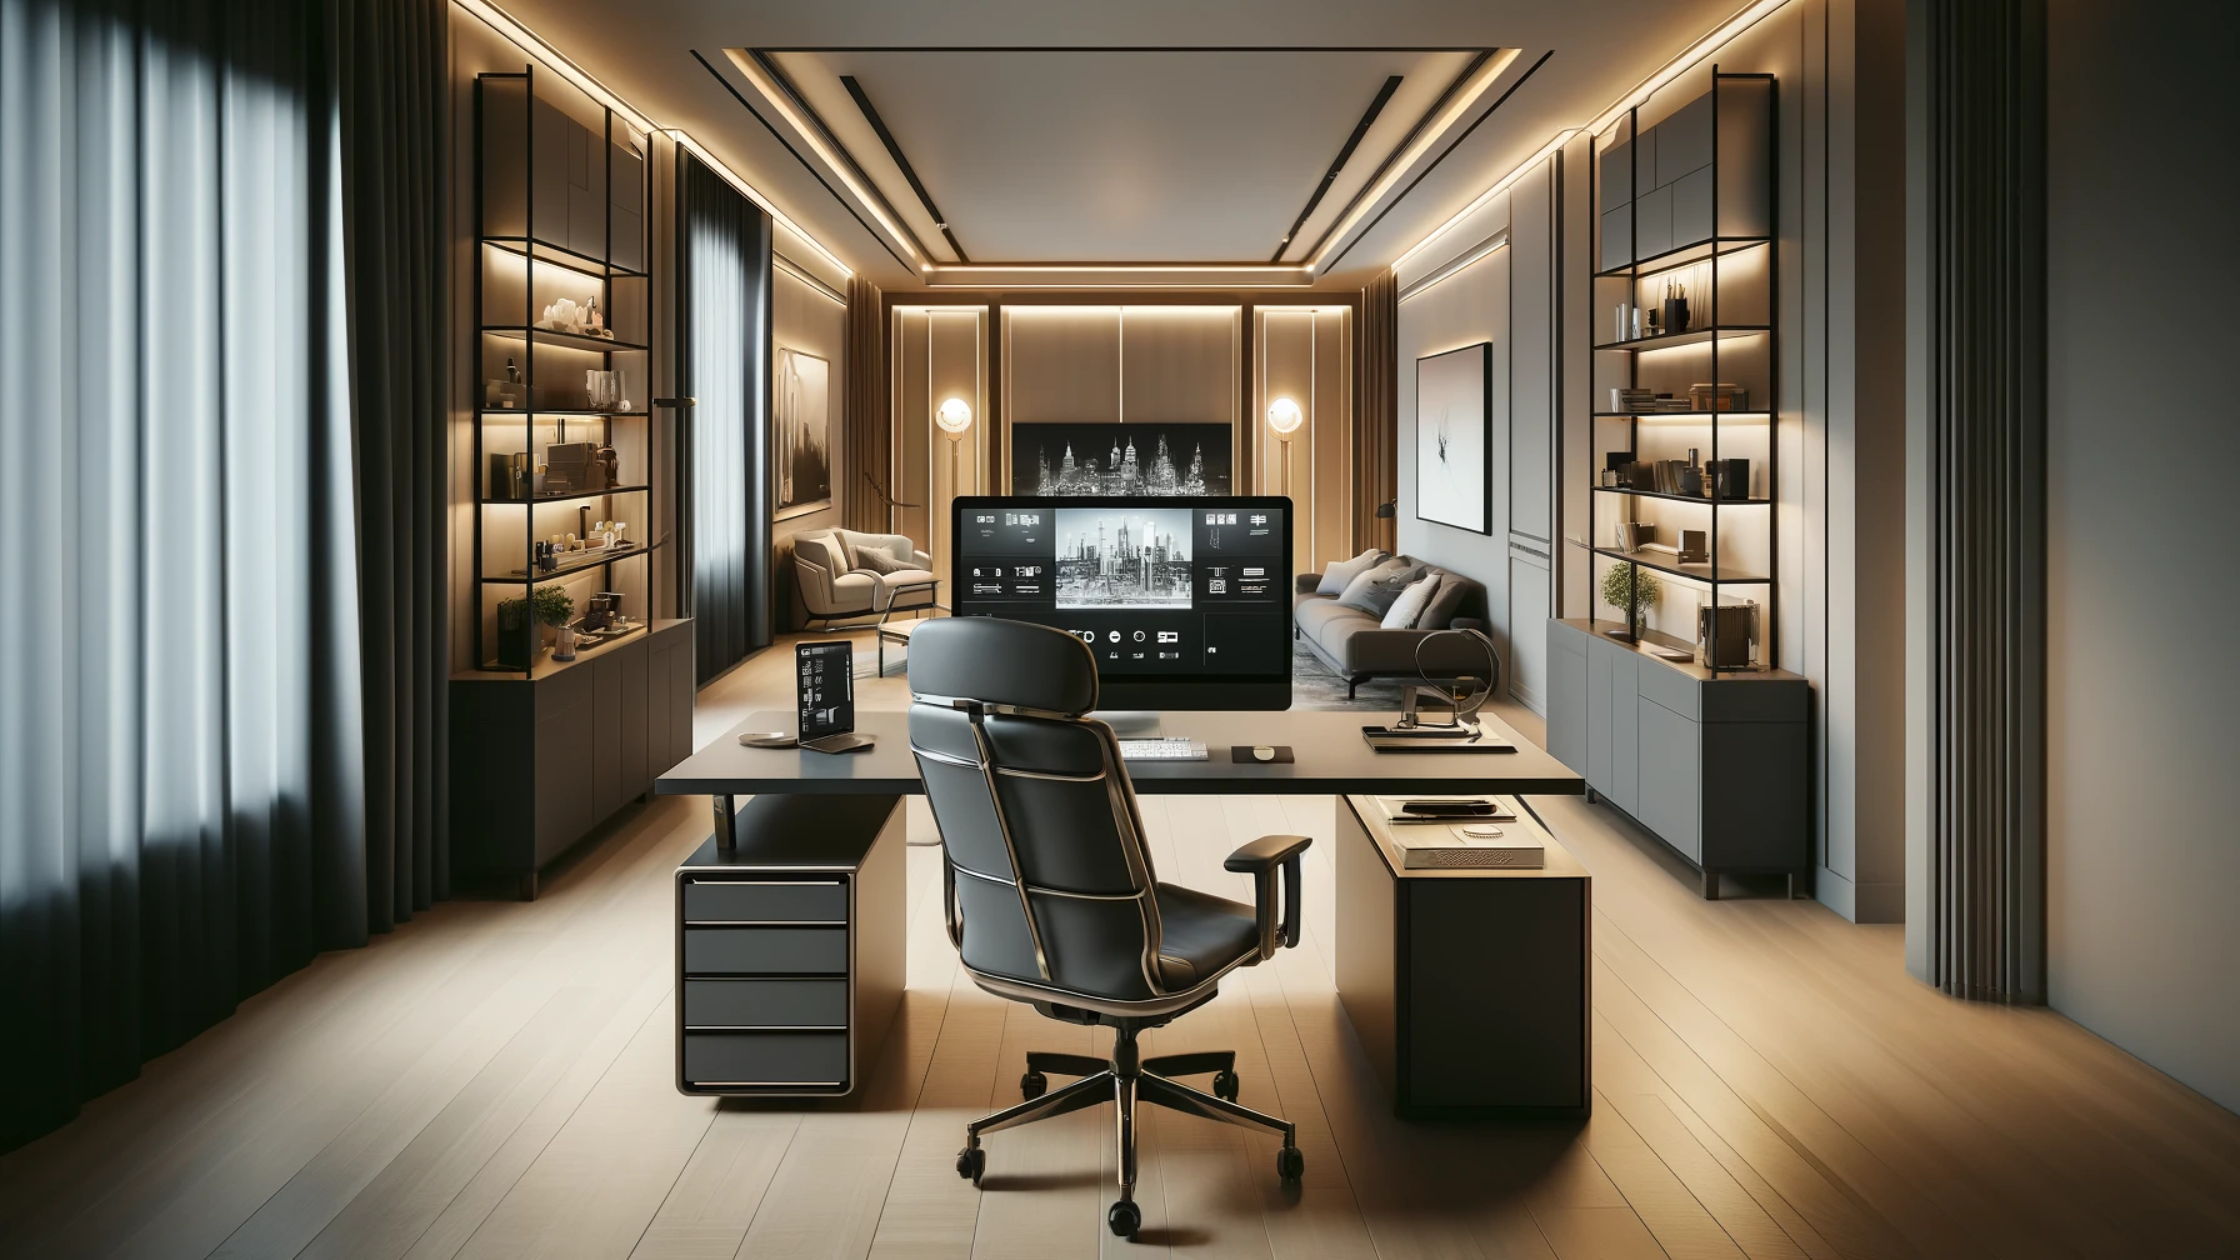 SJ DESIGN CONSULTANTS - NEW DELHI - The Crucial Role of Furniture in Interior Design